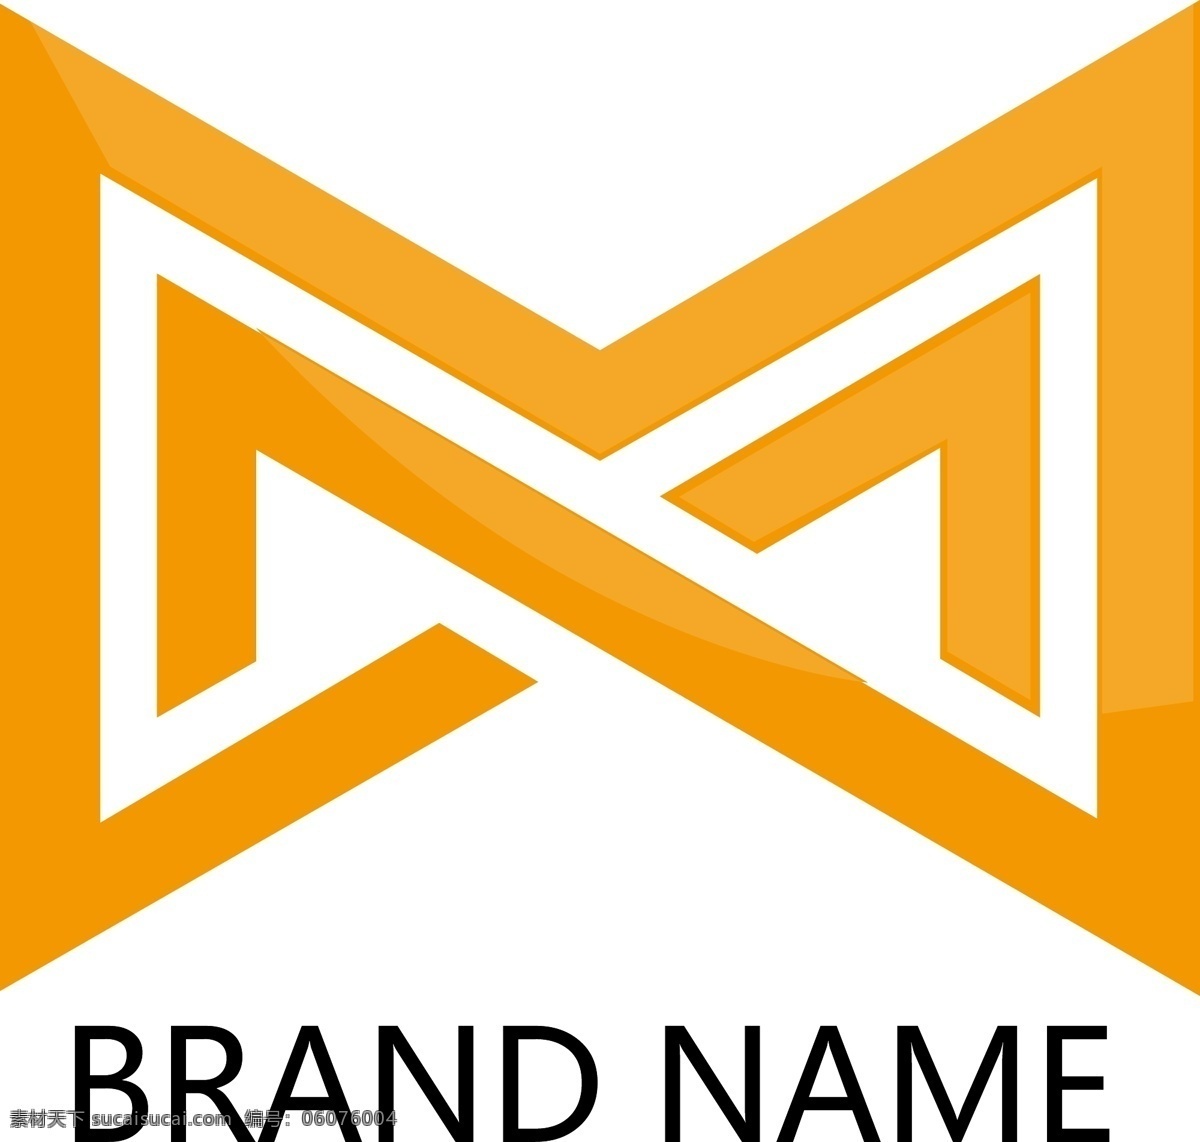 m 字母 企业 logo 英文字母m m标志 mlogo m设计 美logo m英文标志 m英文 矢量卡通 logo设计